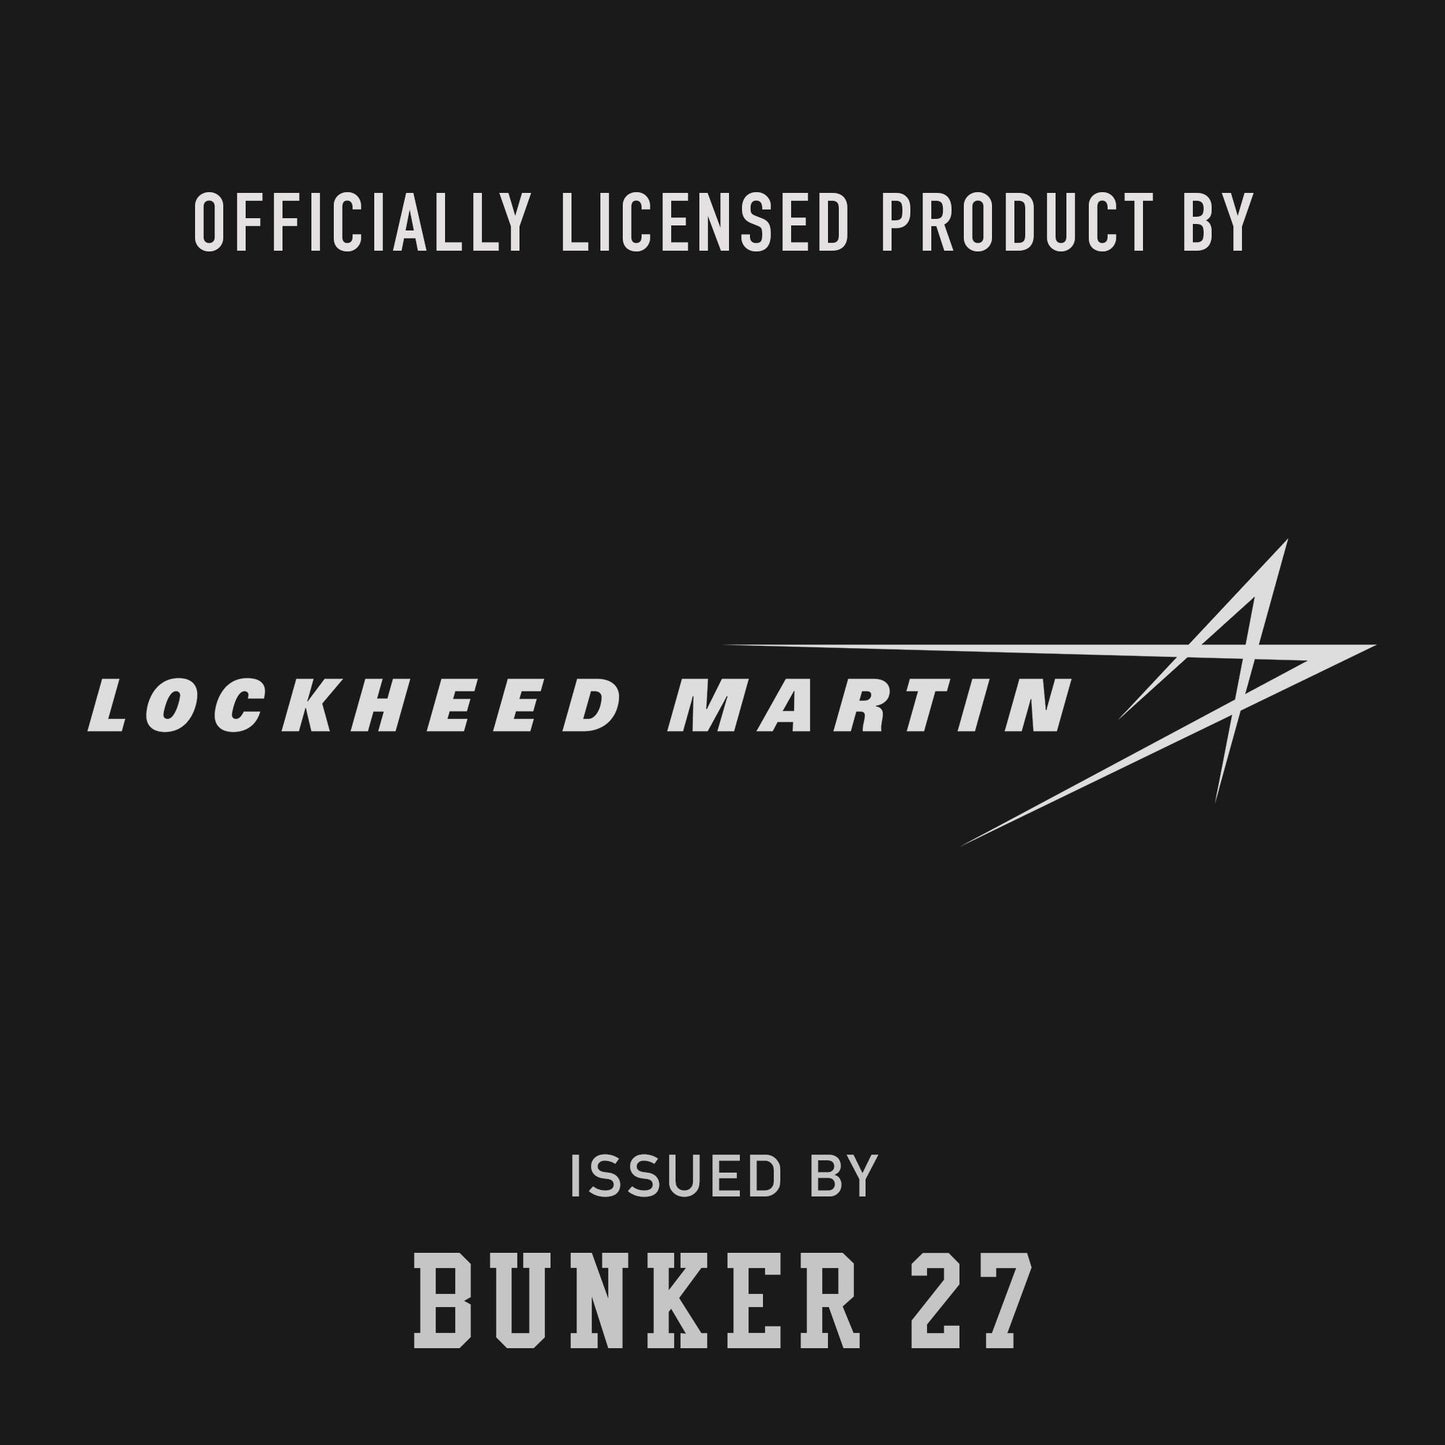 SR-71 Blackbird, Bunker 27